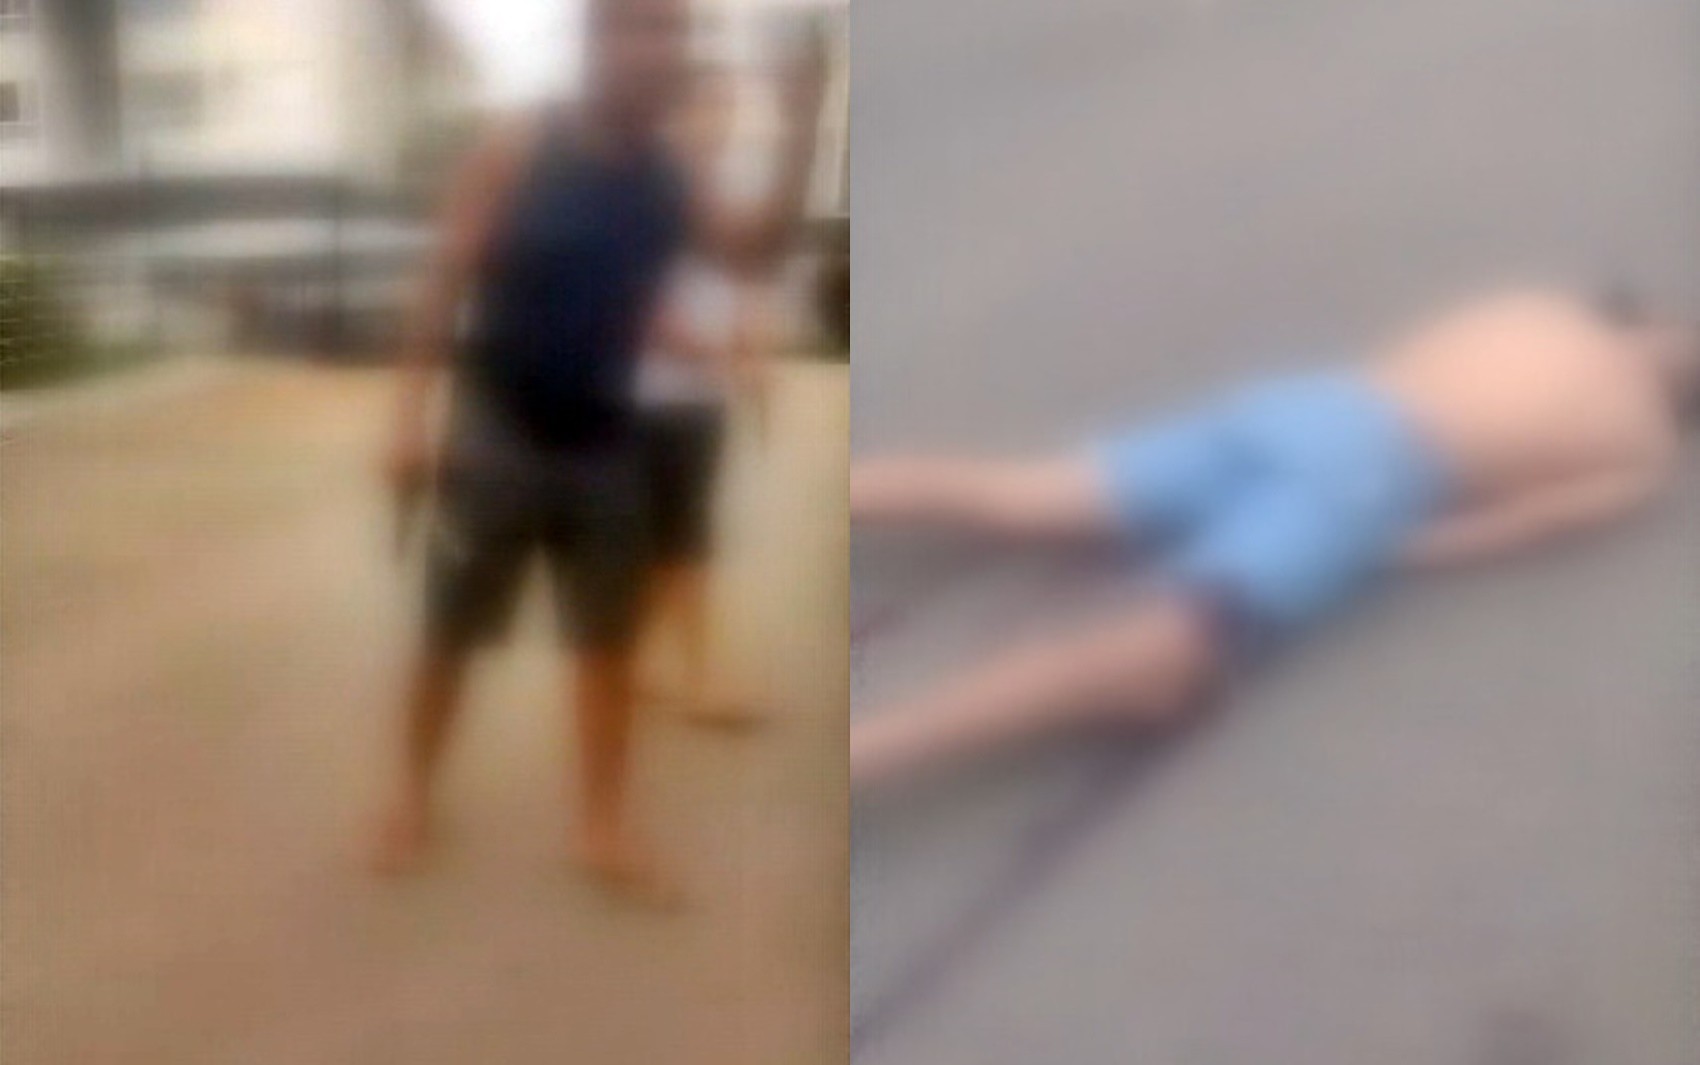 Morador é baleado na coxa após confusão em condomínio no bairro Inconfidentes, em Pouso Alegre, MG